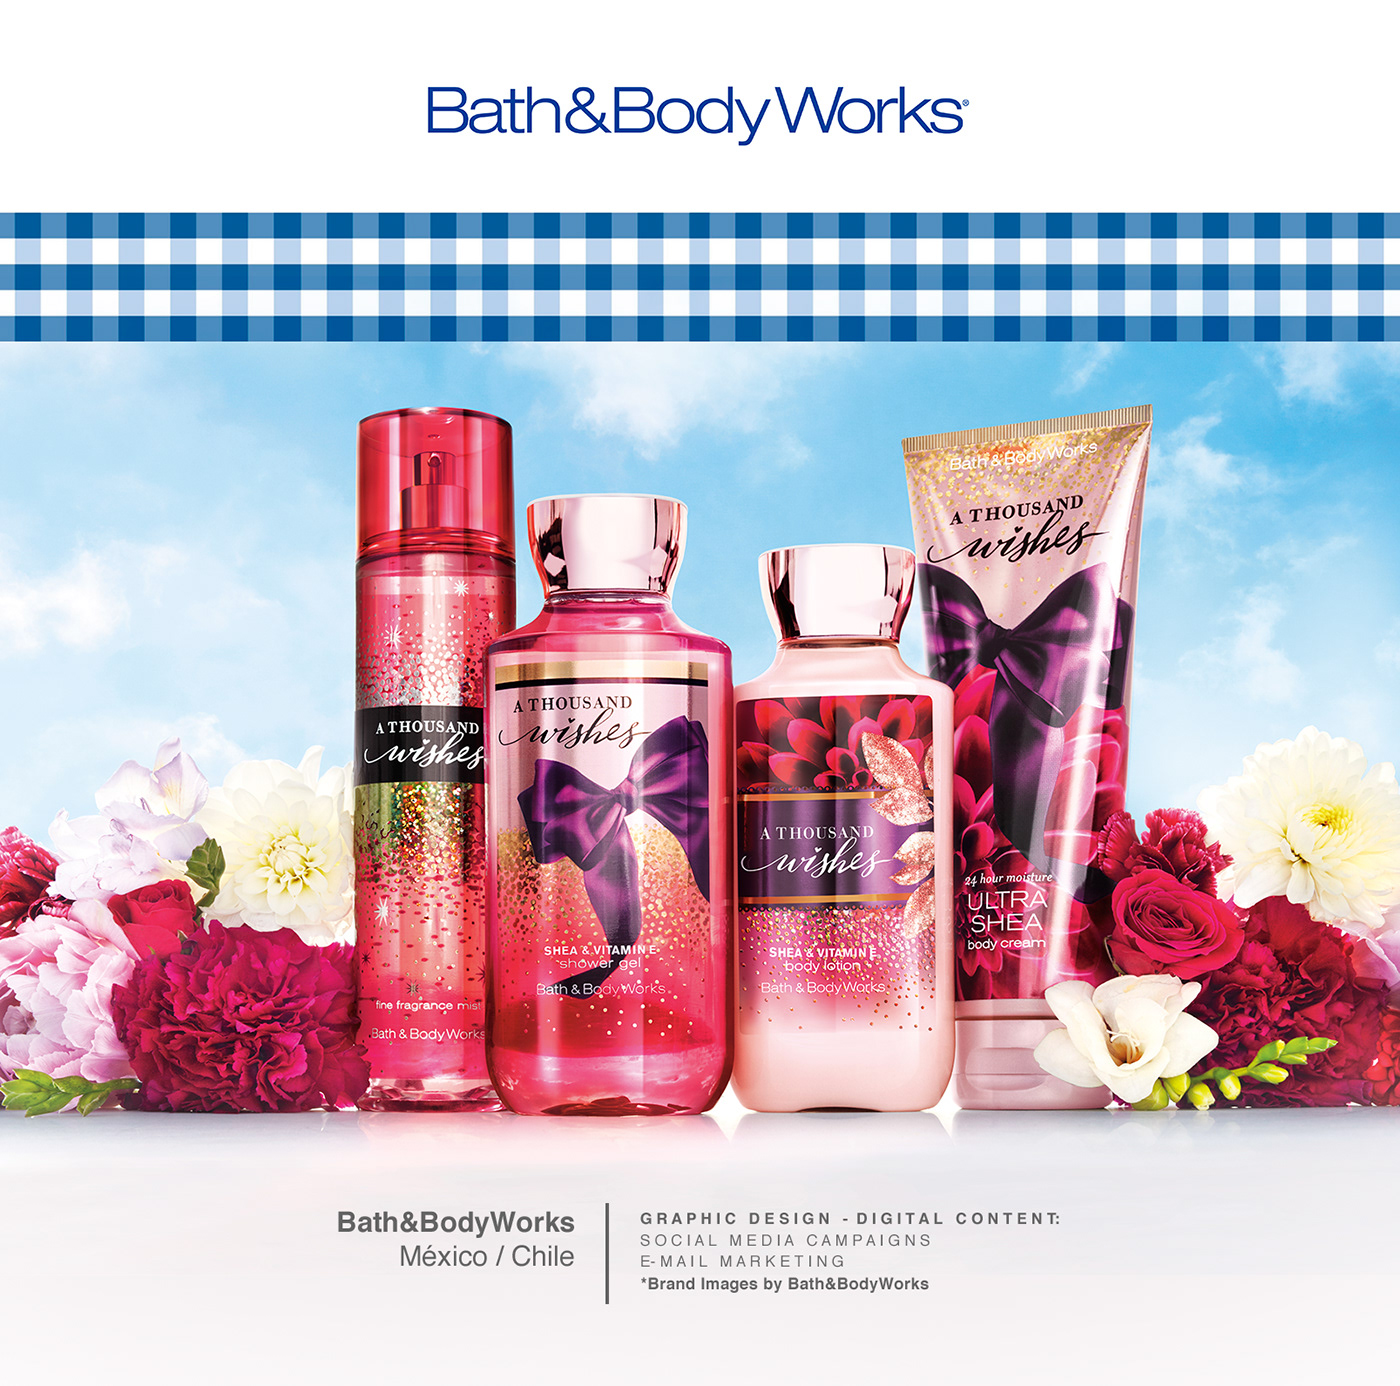 Bath care Bath&BodyWorks Body care digital campaign digital content e-mail marketing edm home fragrances newsletter social media